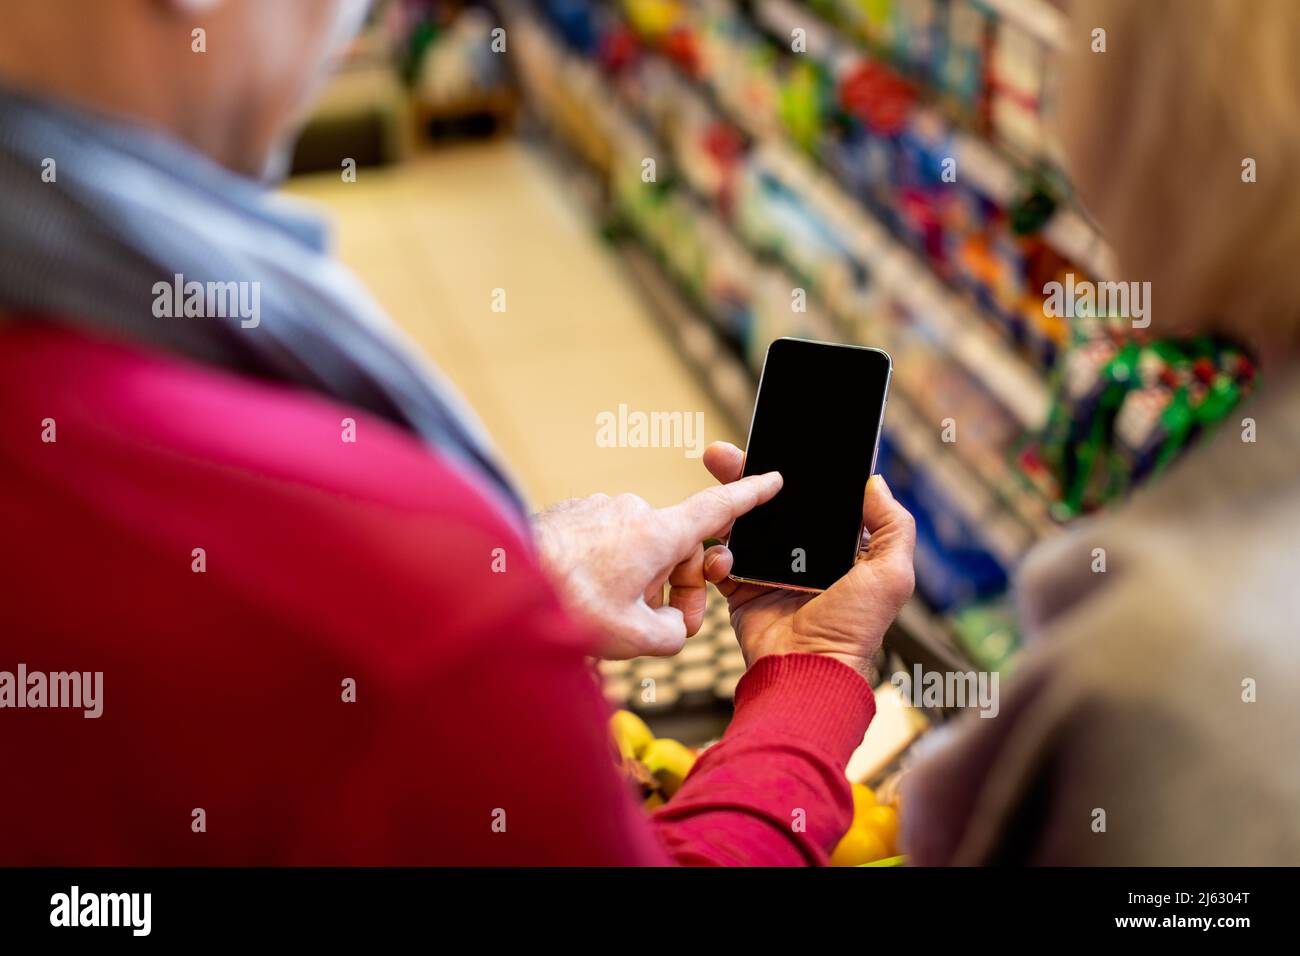 Clients méconnaissables achetant de la nourriture en magasin, utilisant un smartphone, mockup Banque D'Images